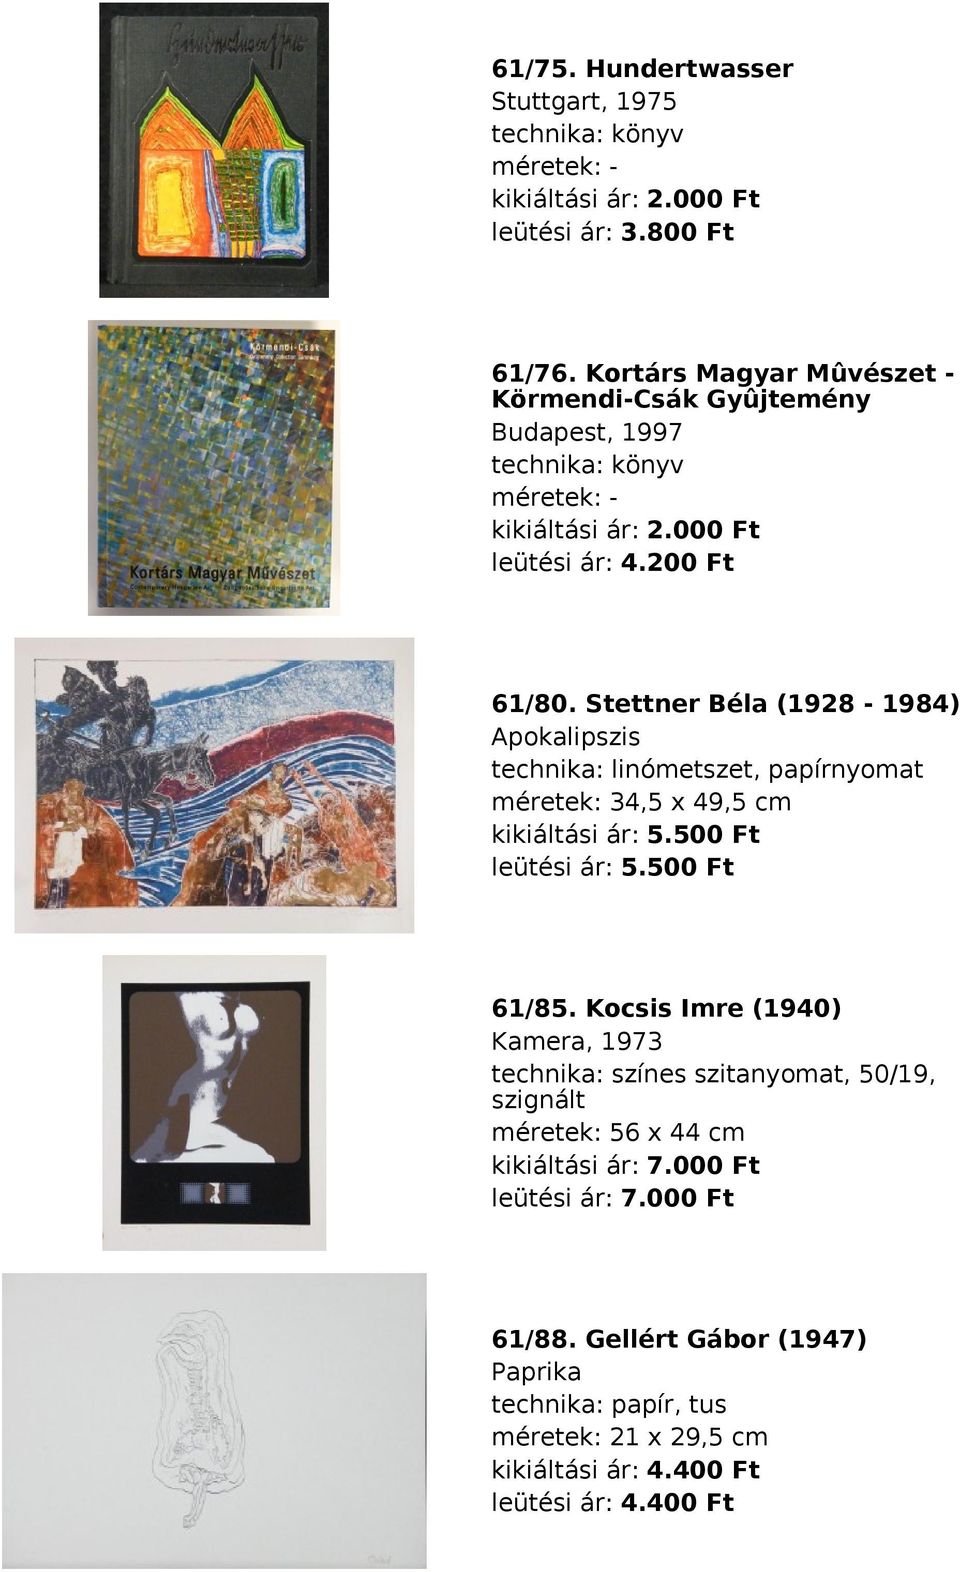 Stettner Béla (1928-1984) Apokalipszis linómetszet, papírnyomat méretek: 34,5 x 49,5 cm kikiáltási ár: 5.500 Ft leütési ár: 5.500 Ft 61/85.